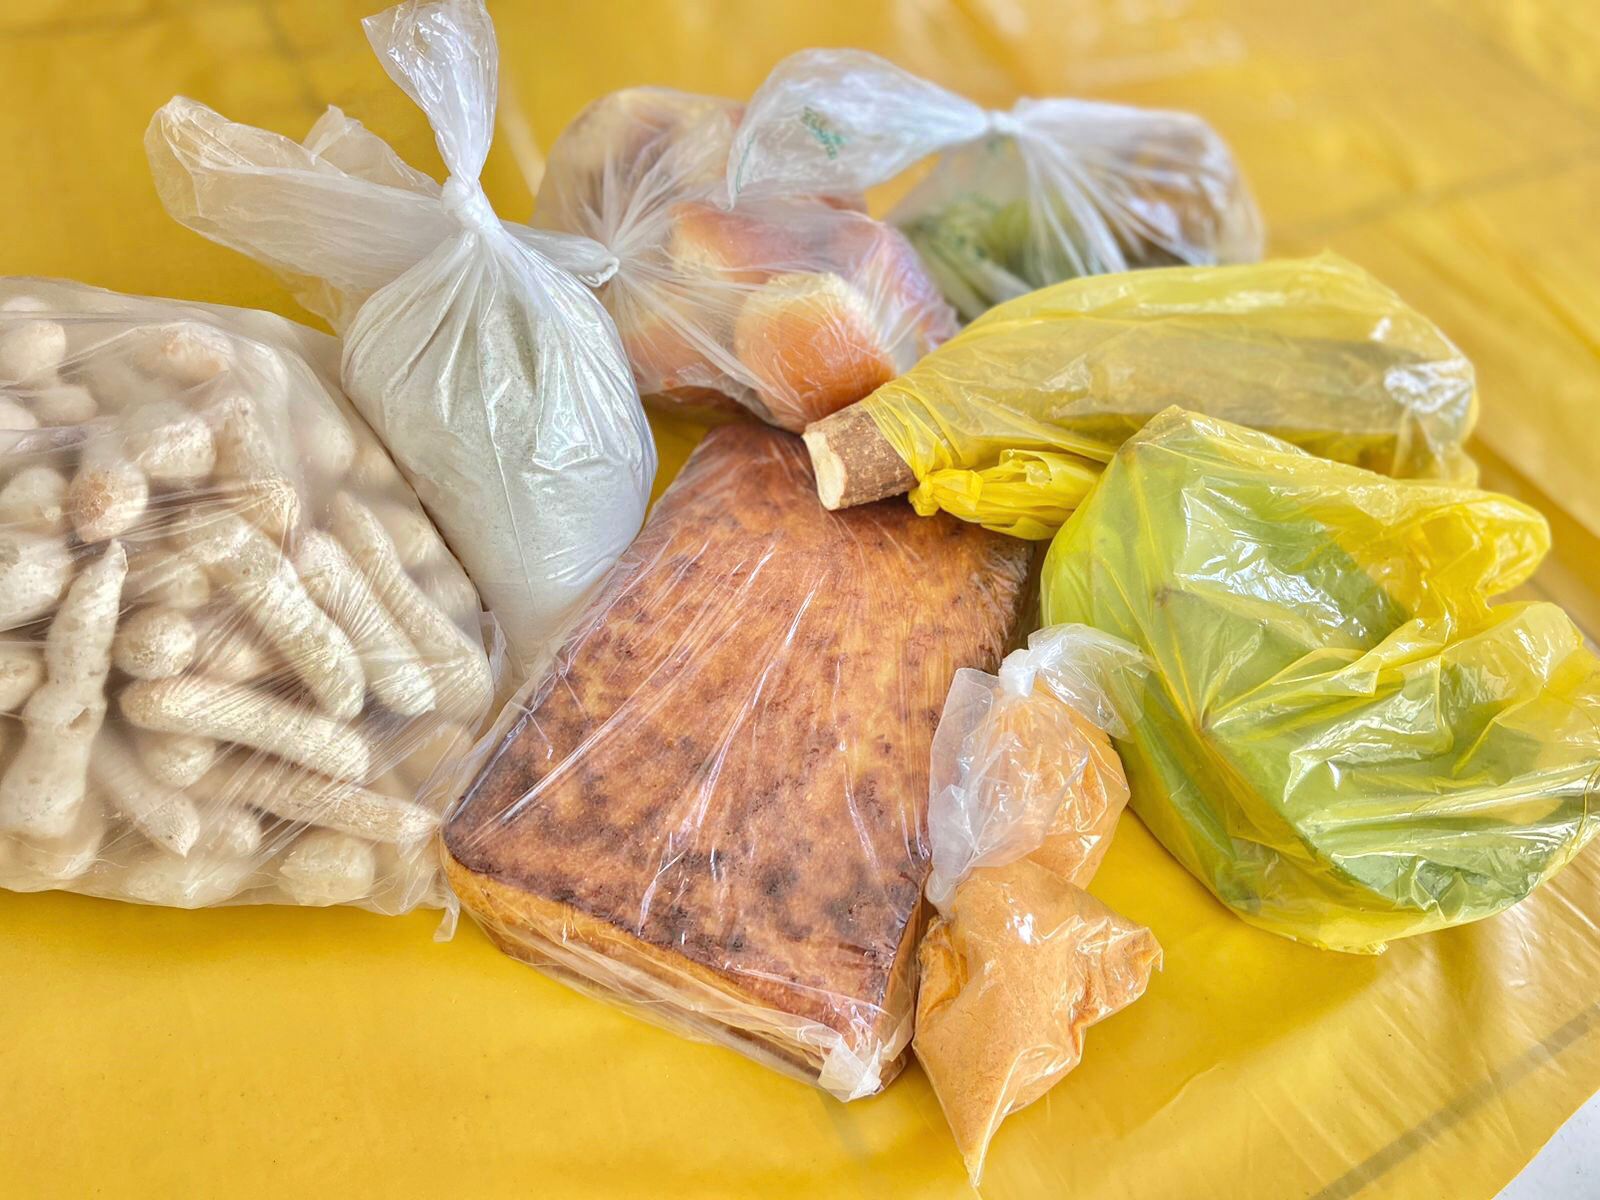 Programa de Aquisição de Alimentos (PAA) é retomado pelo Governo Federal e já beneficia dezenas de famílias em Itagimirim e União Baiana 52